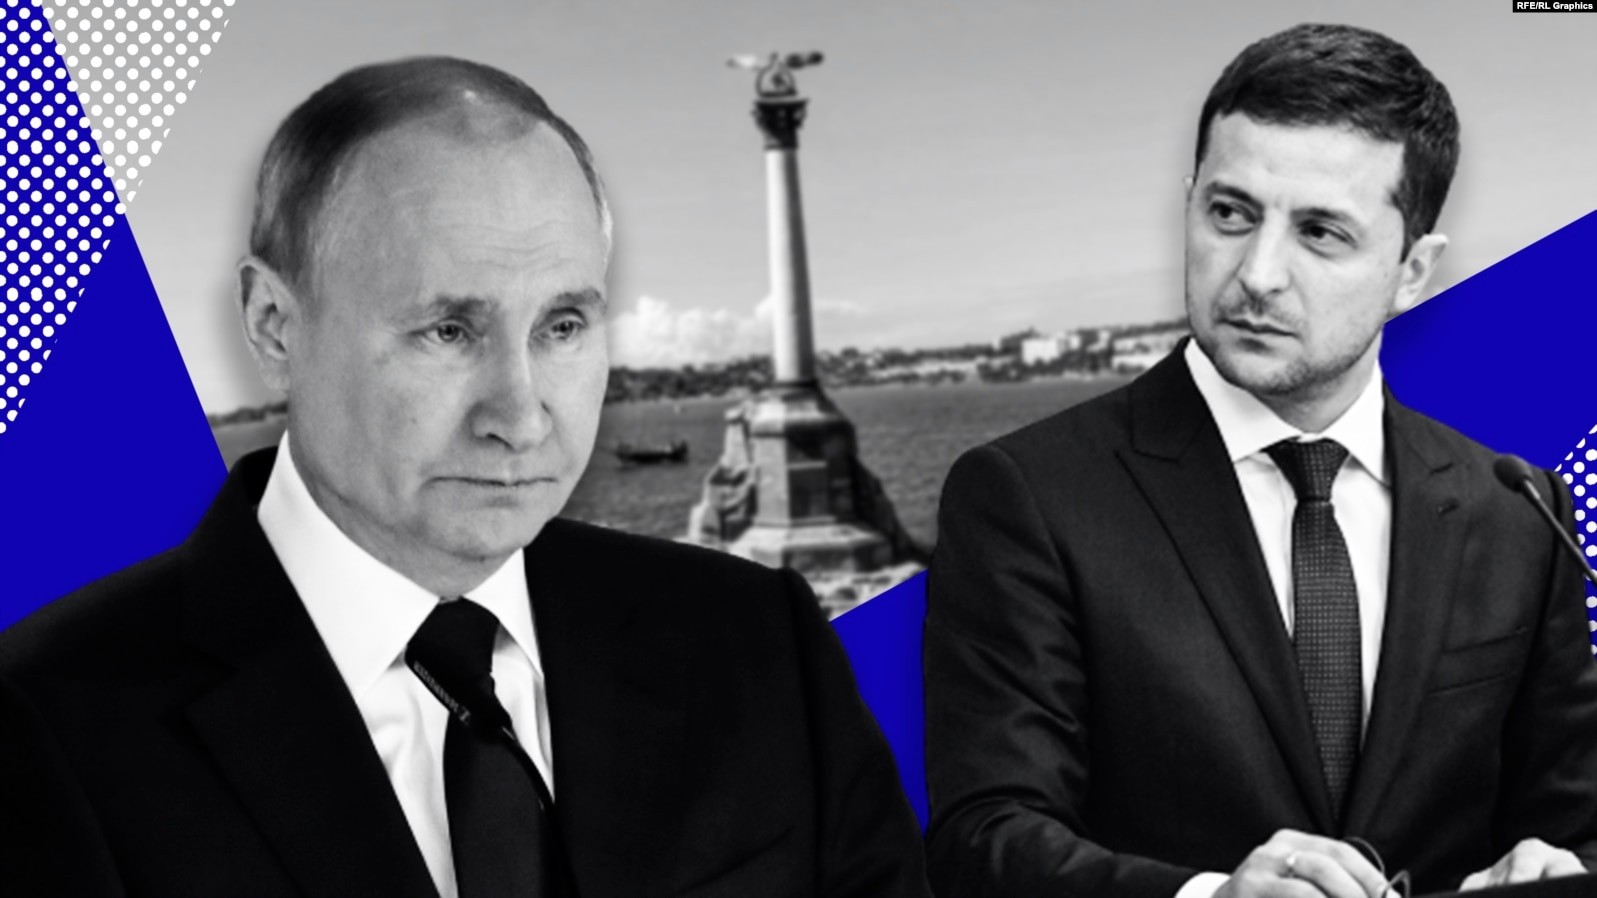 Tổng thống Ukraine đề xuất địa điểm gặp mặt ông Putin, EU chuẩn bị gói đòn mới nhằm vào Nga. (Nguồn: RFE-RL)